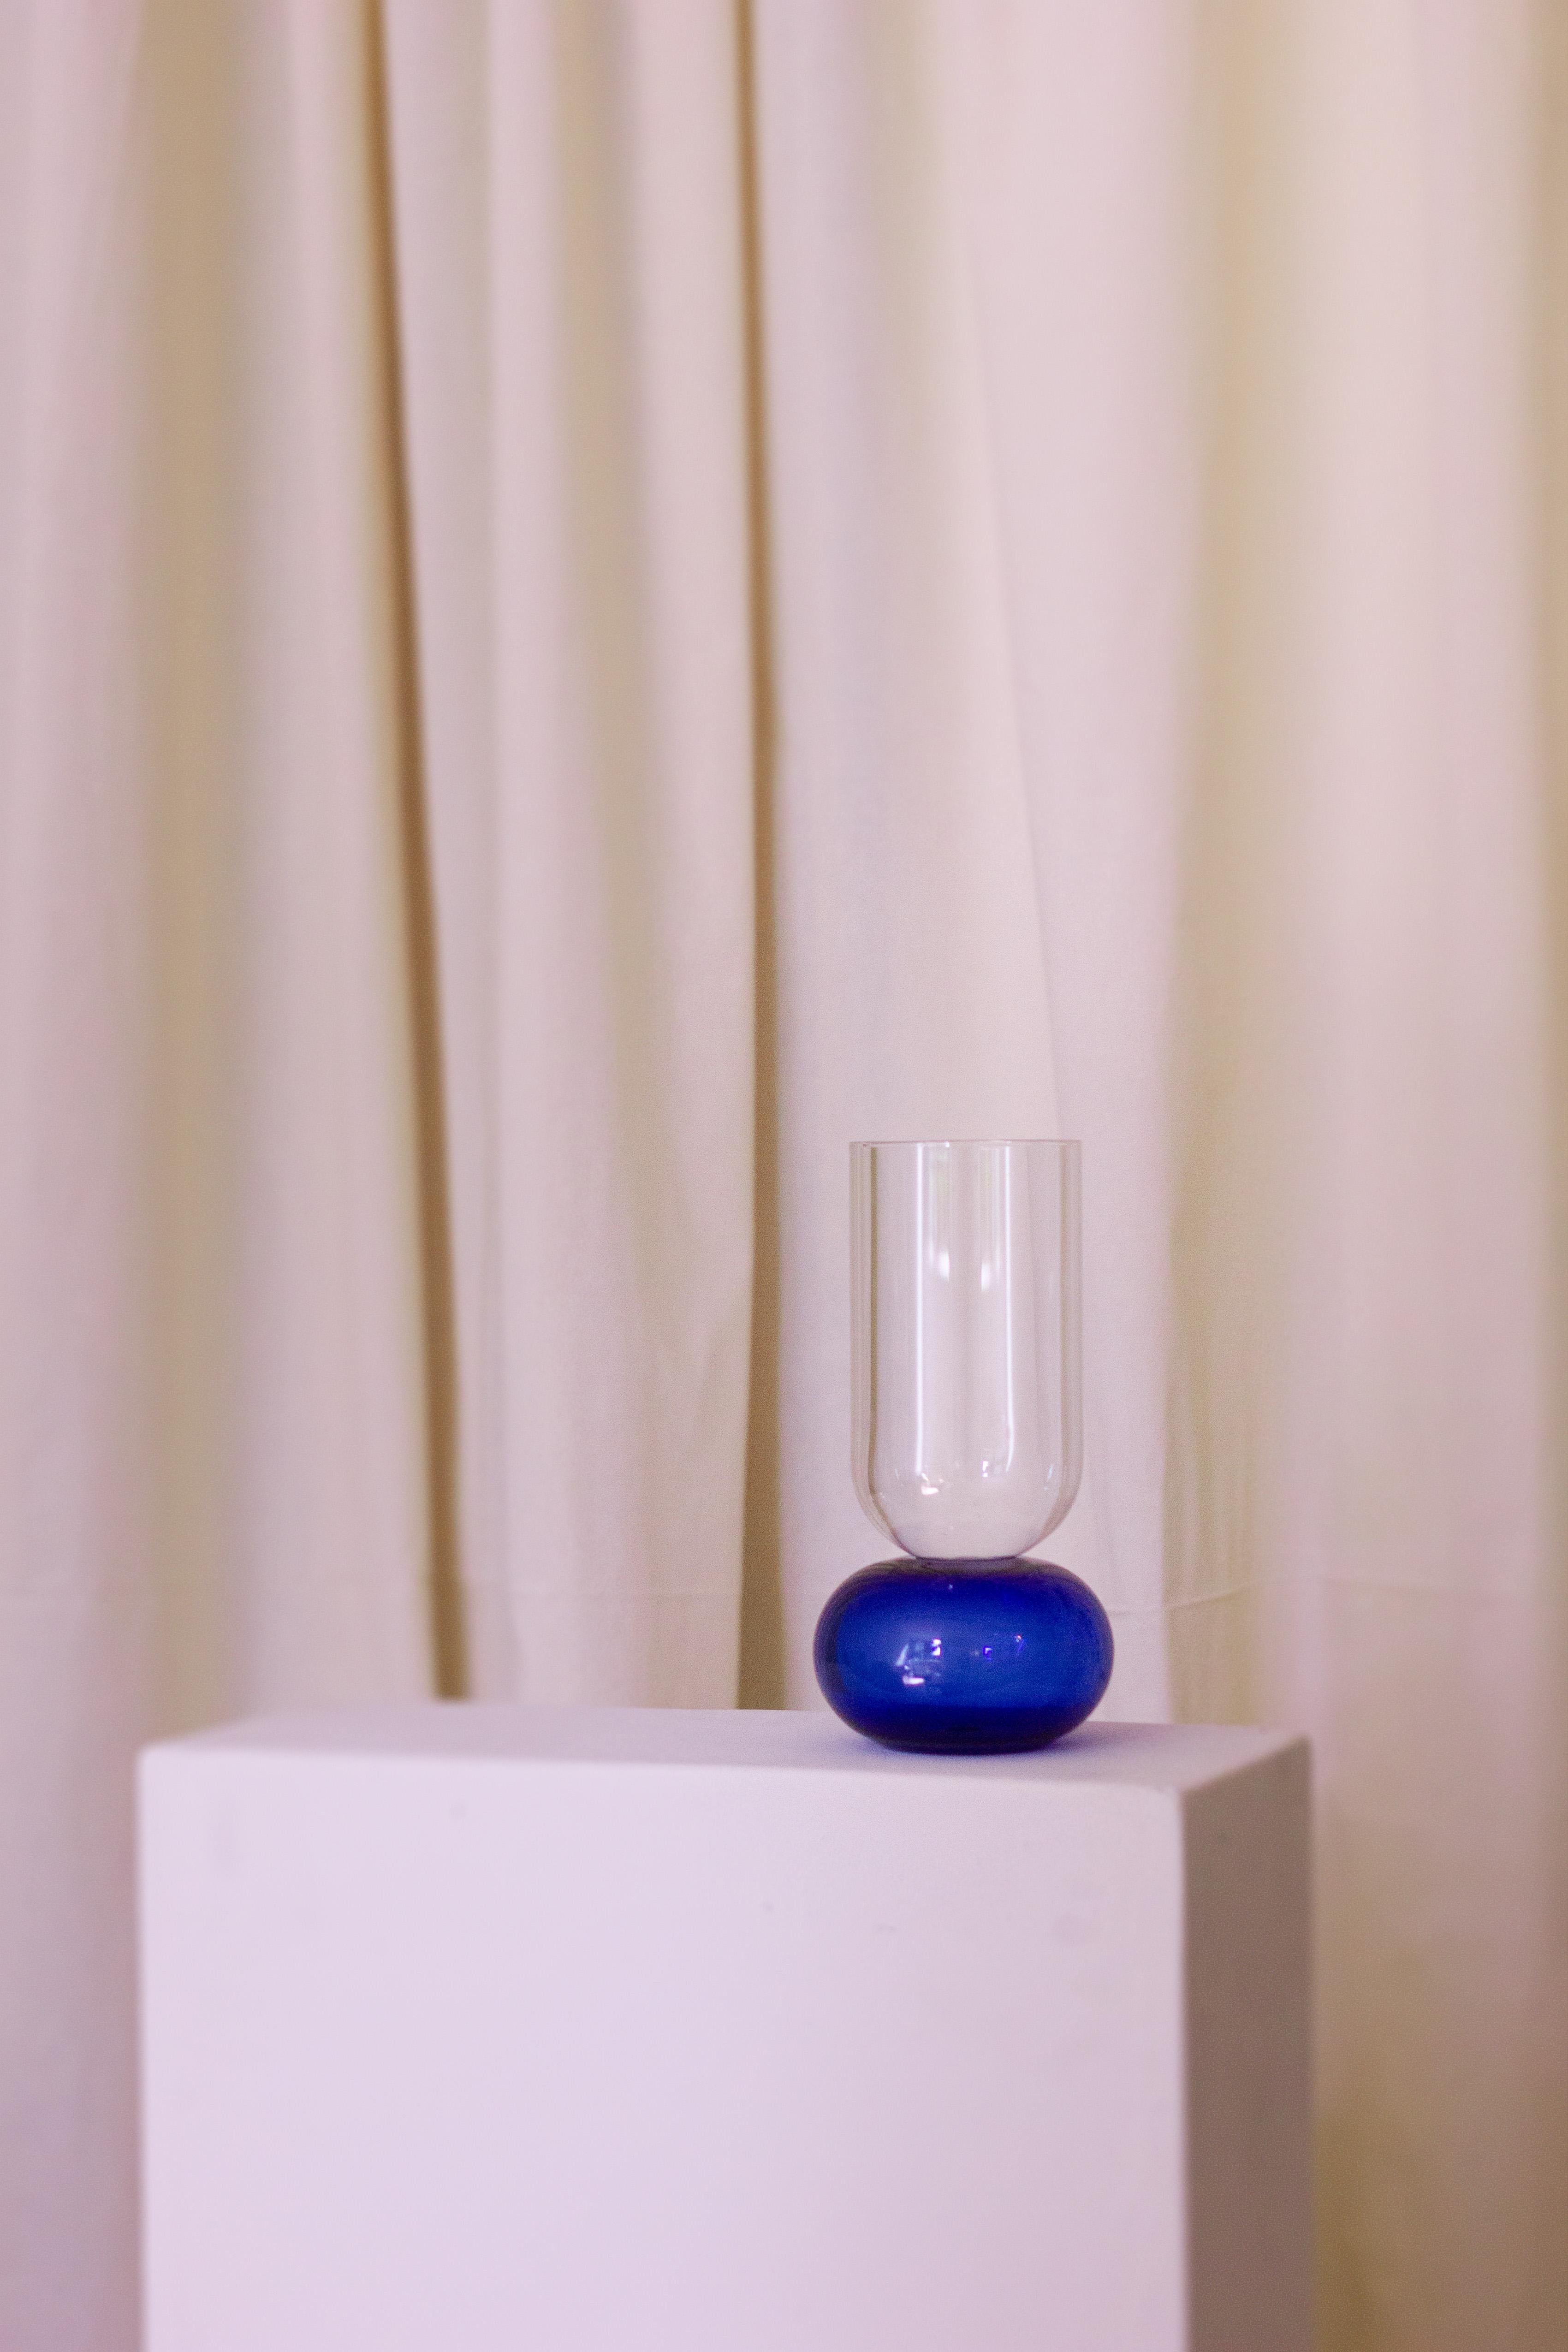 Diese bezaubernde, handgefertigte Vase aus feinem Kristall ist ein Schaufenster der reinen Volumen. Ihre elegante Silhouette besteht aus einem kugelförmigen, blauen Sockel, der den zylindrischen, klaren Körper trägt. Nach traditionellen Techniken